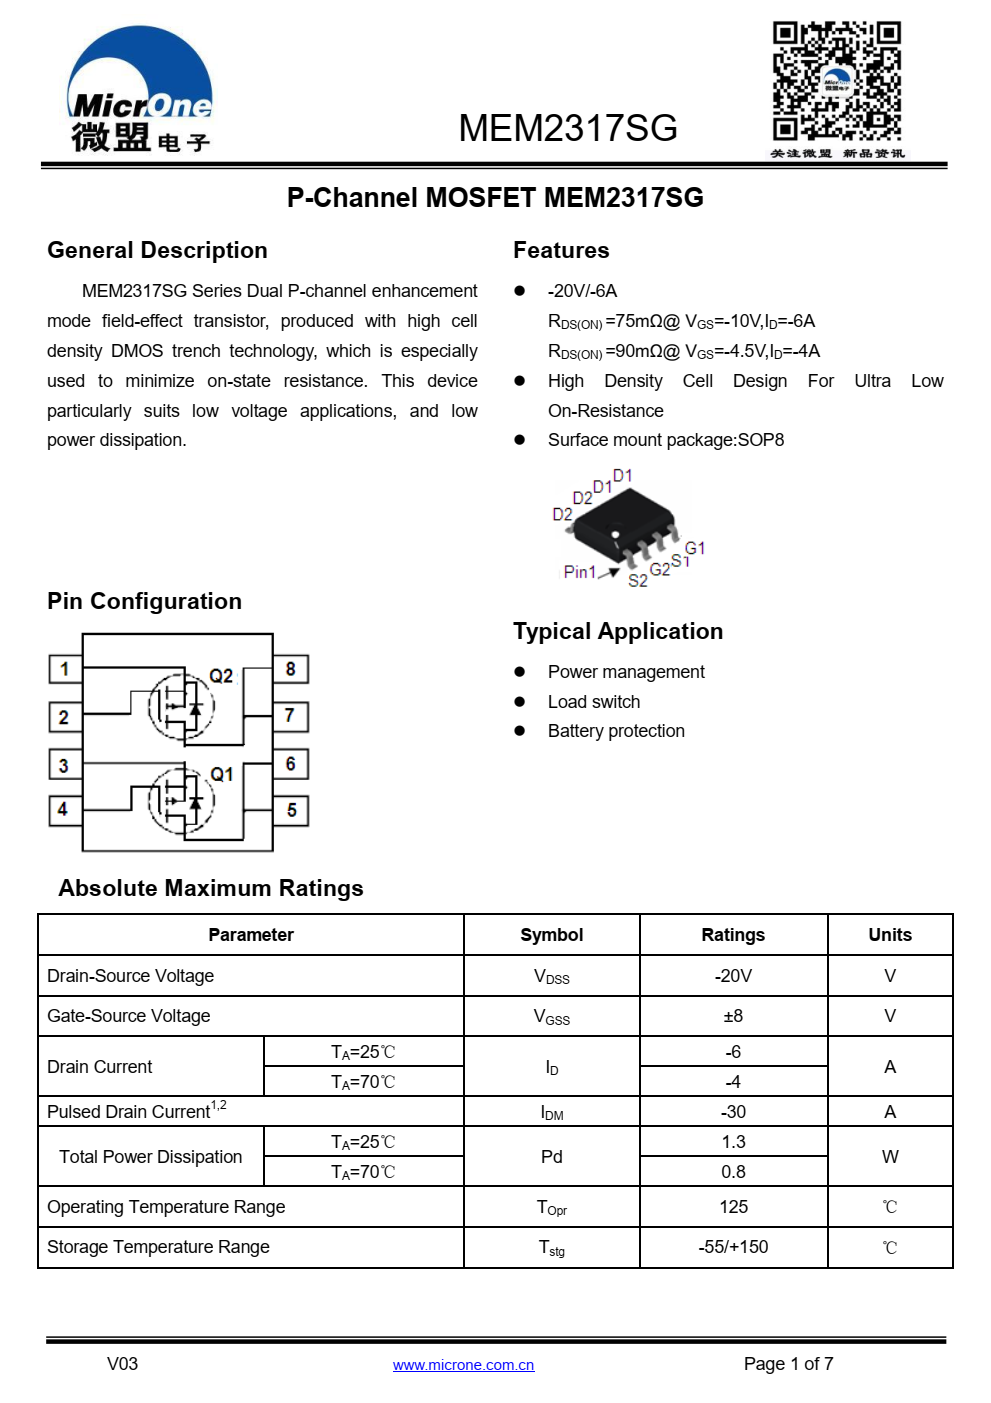 MEM2317SG系列双P通道增强  模式场效应晶体管，采用高单元生产  密度DMOS沟槽技术